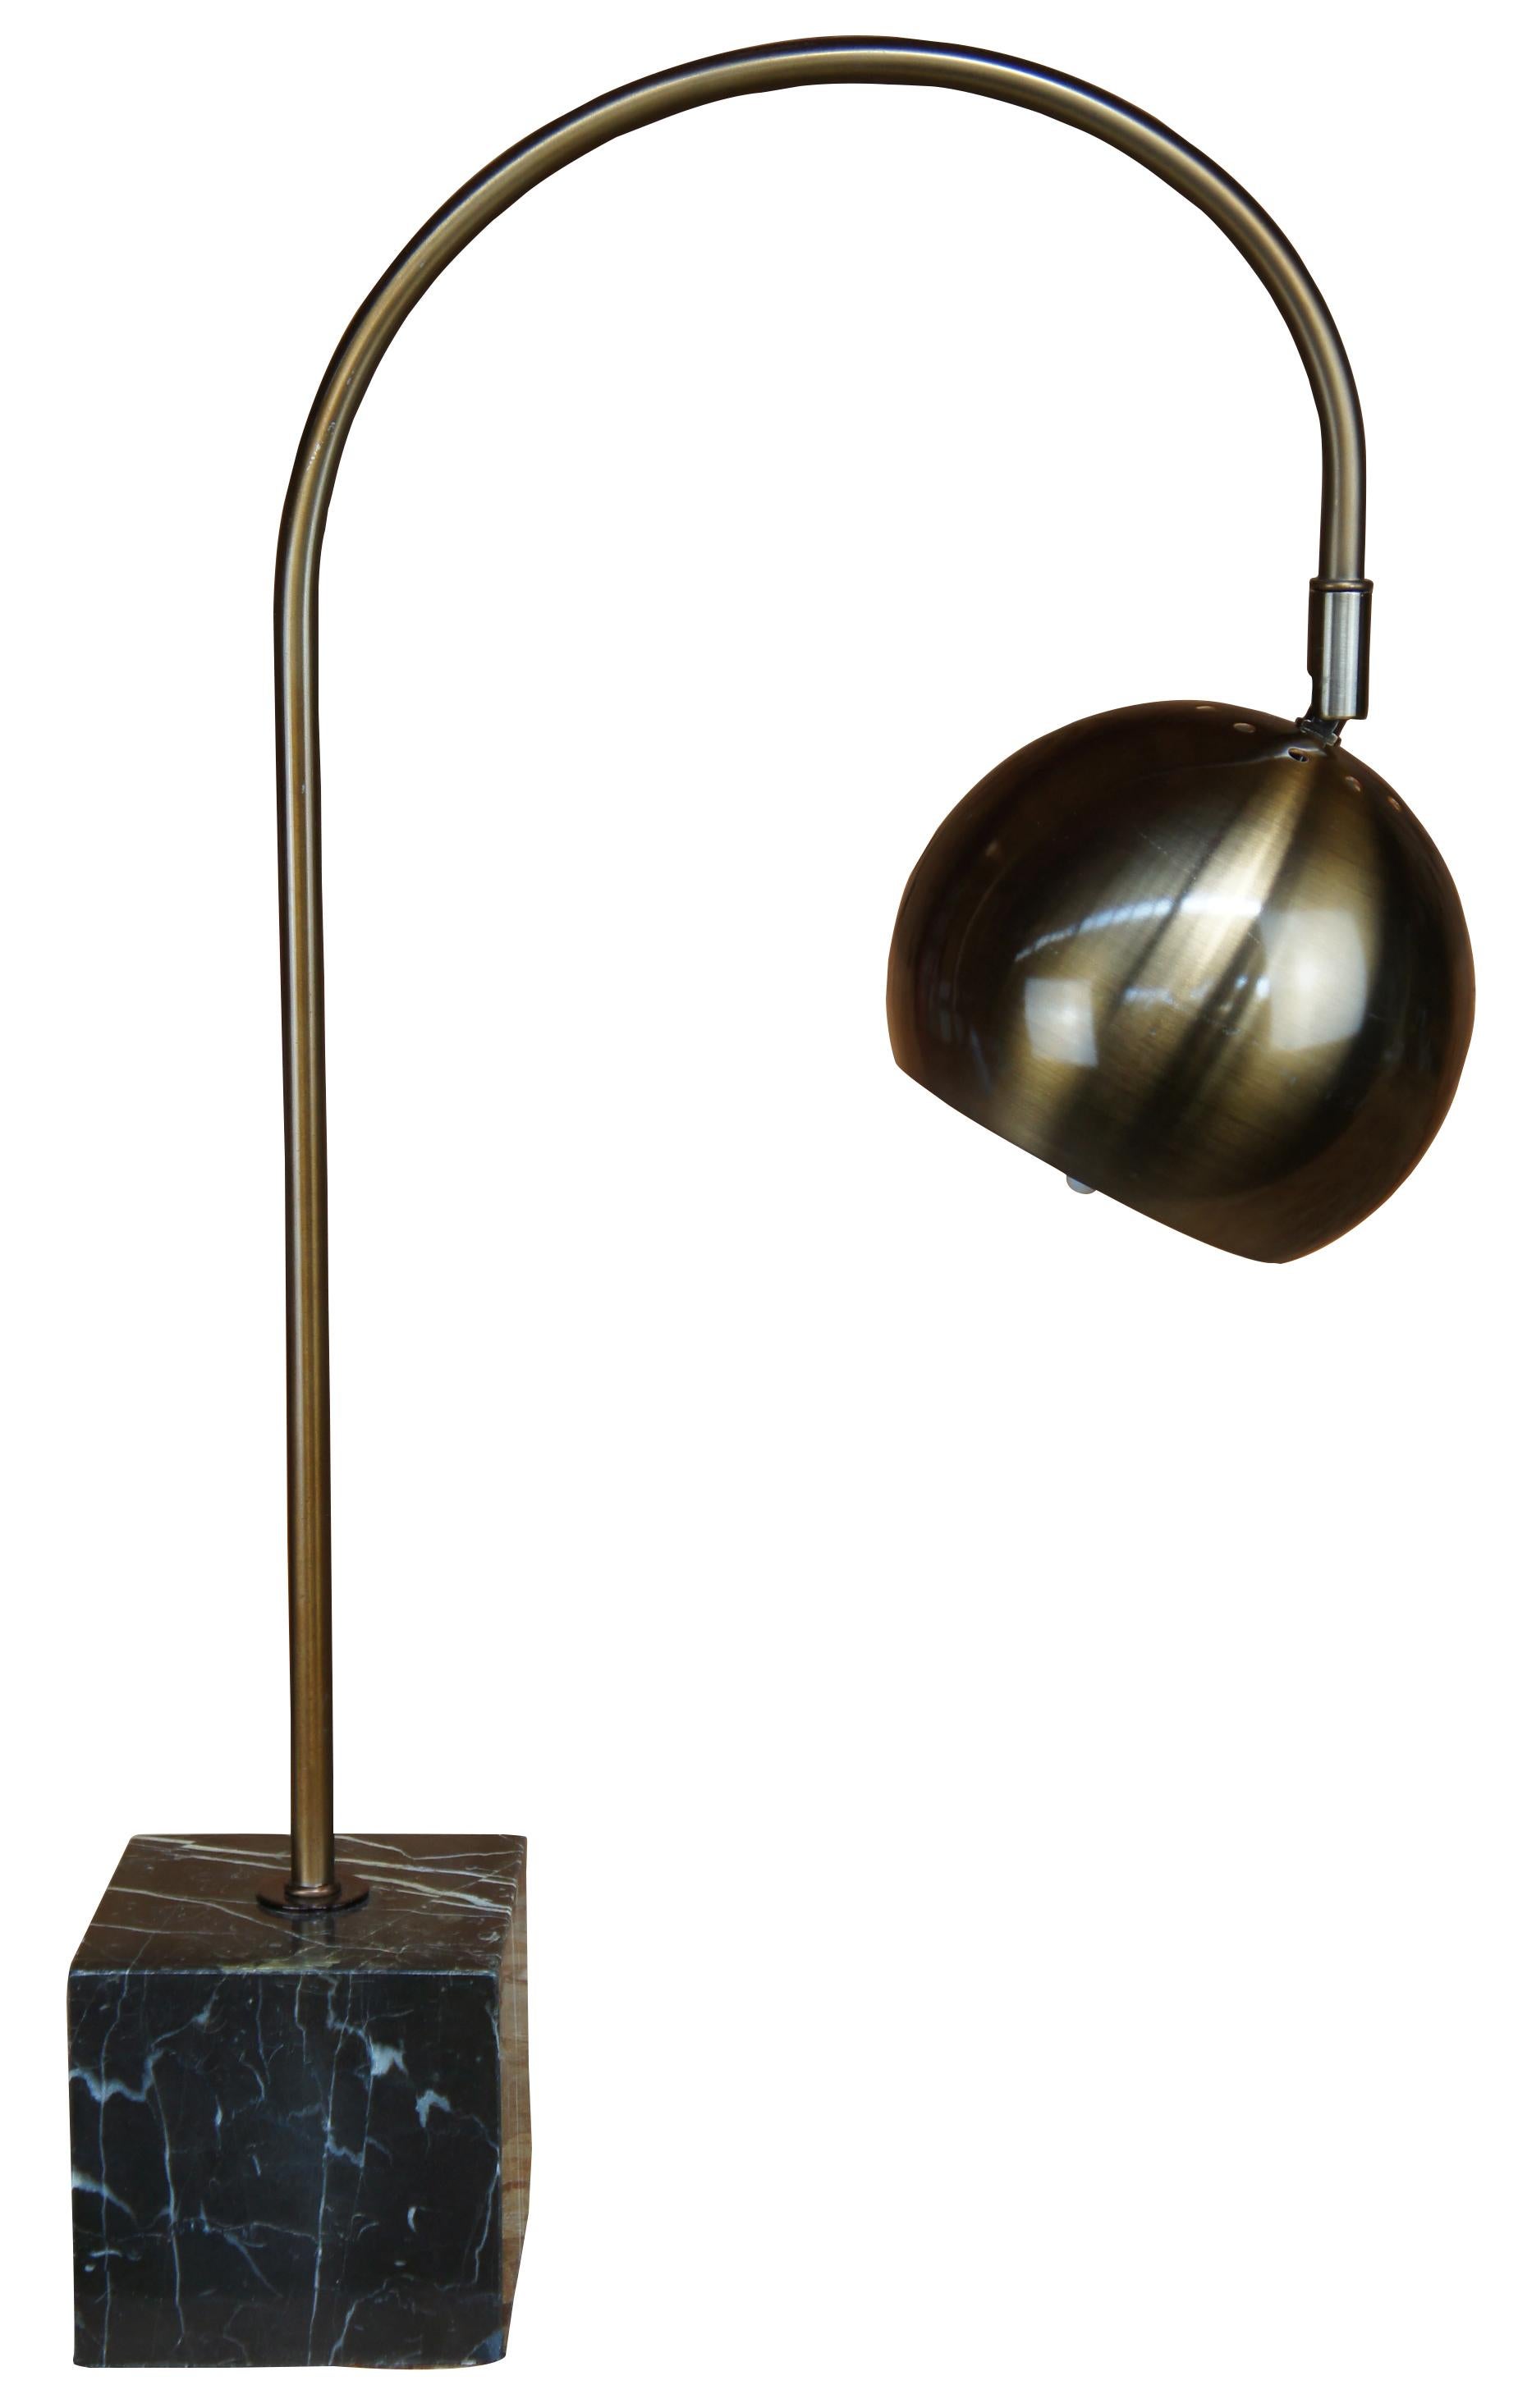 Belle lampe de table en laiton avec une base en marbre. Comprend une forme en arc avec un globe oculaire réglable. Inspiré par des artistes comme Robert Sonneman et Harvey Guzzini.

Dimensions : 4,5 po x 15,5 po x 22,75 po / Base - 4,5 po x 4,5 po